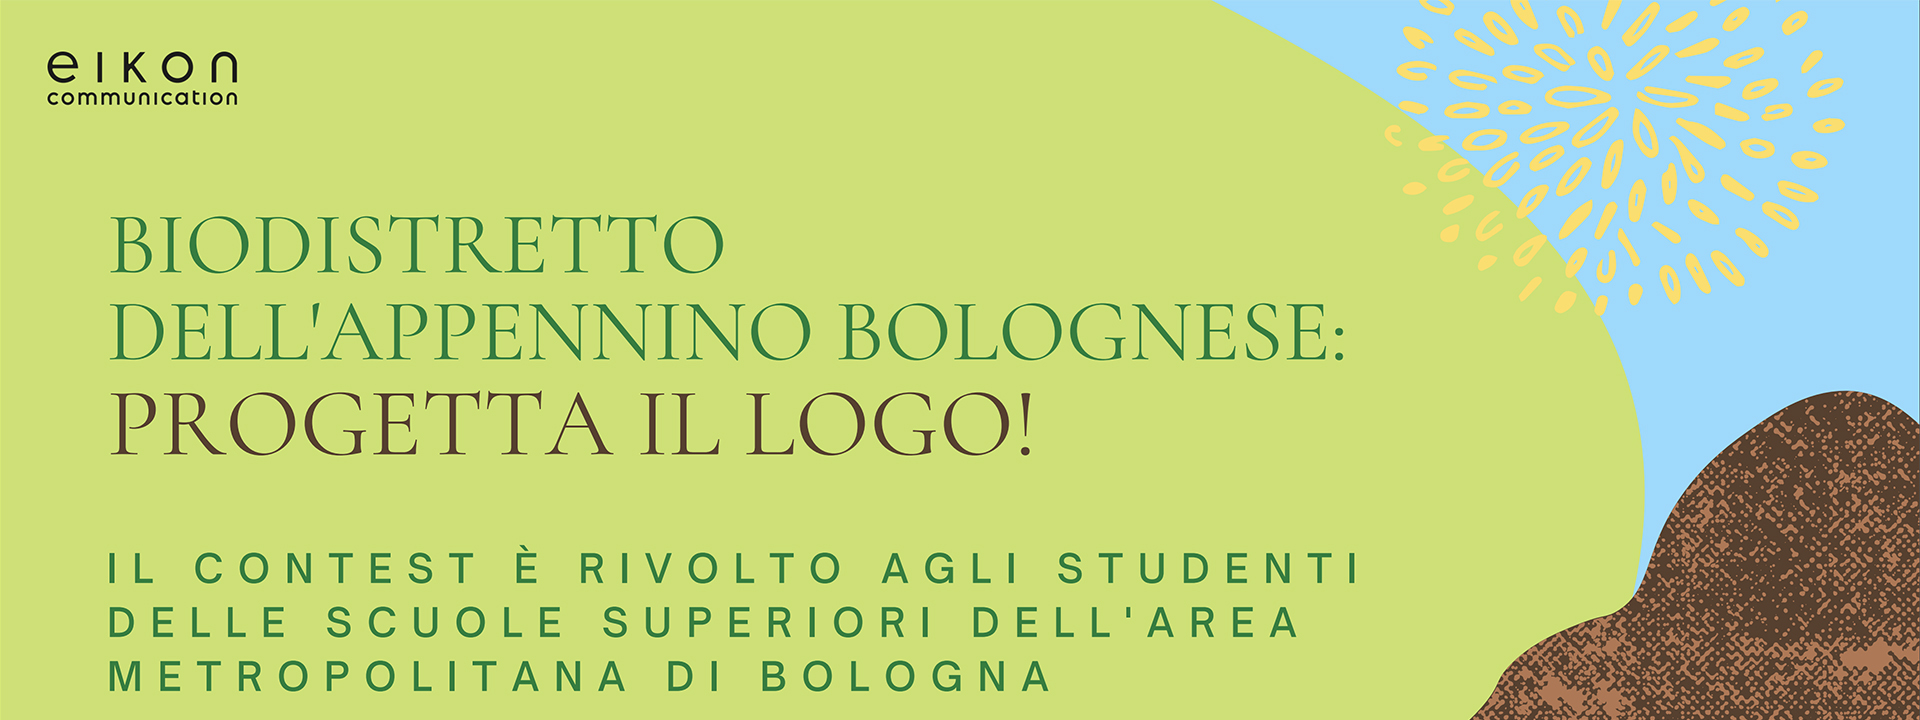 Biodistretto dell'Appennino bolognese: progetta il logo